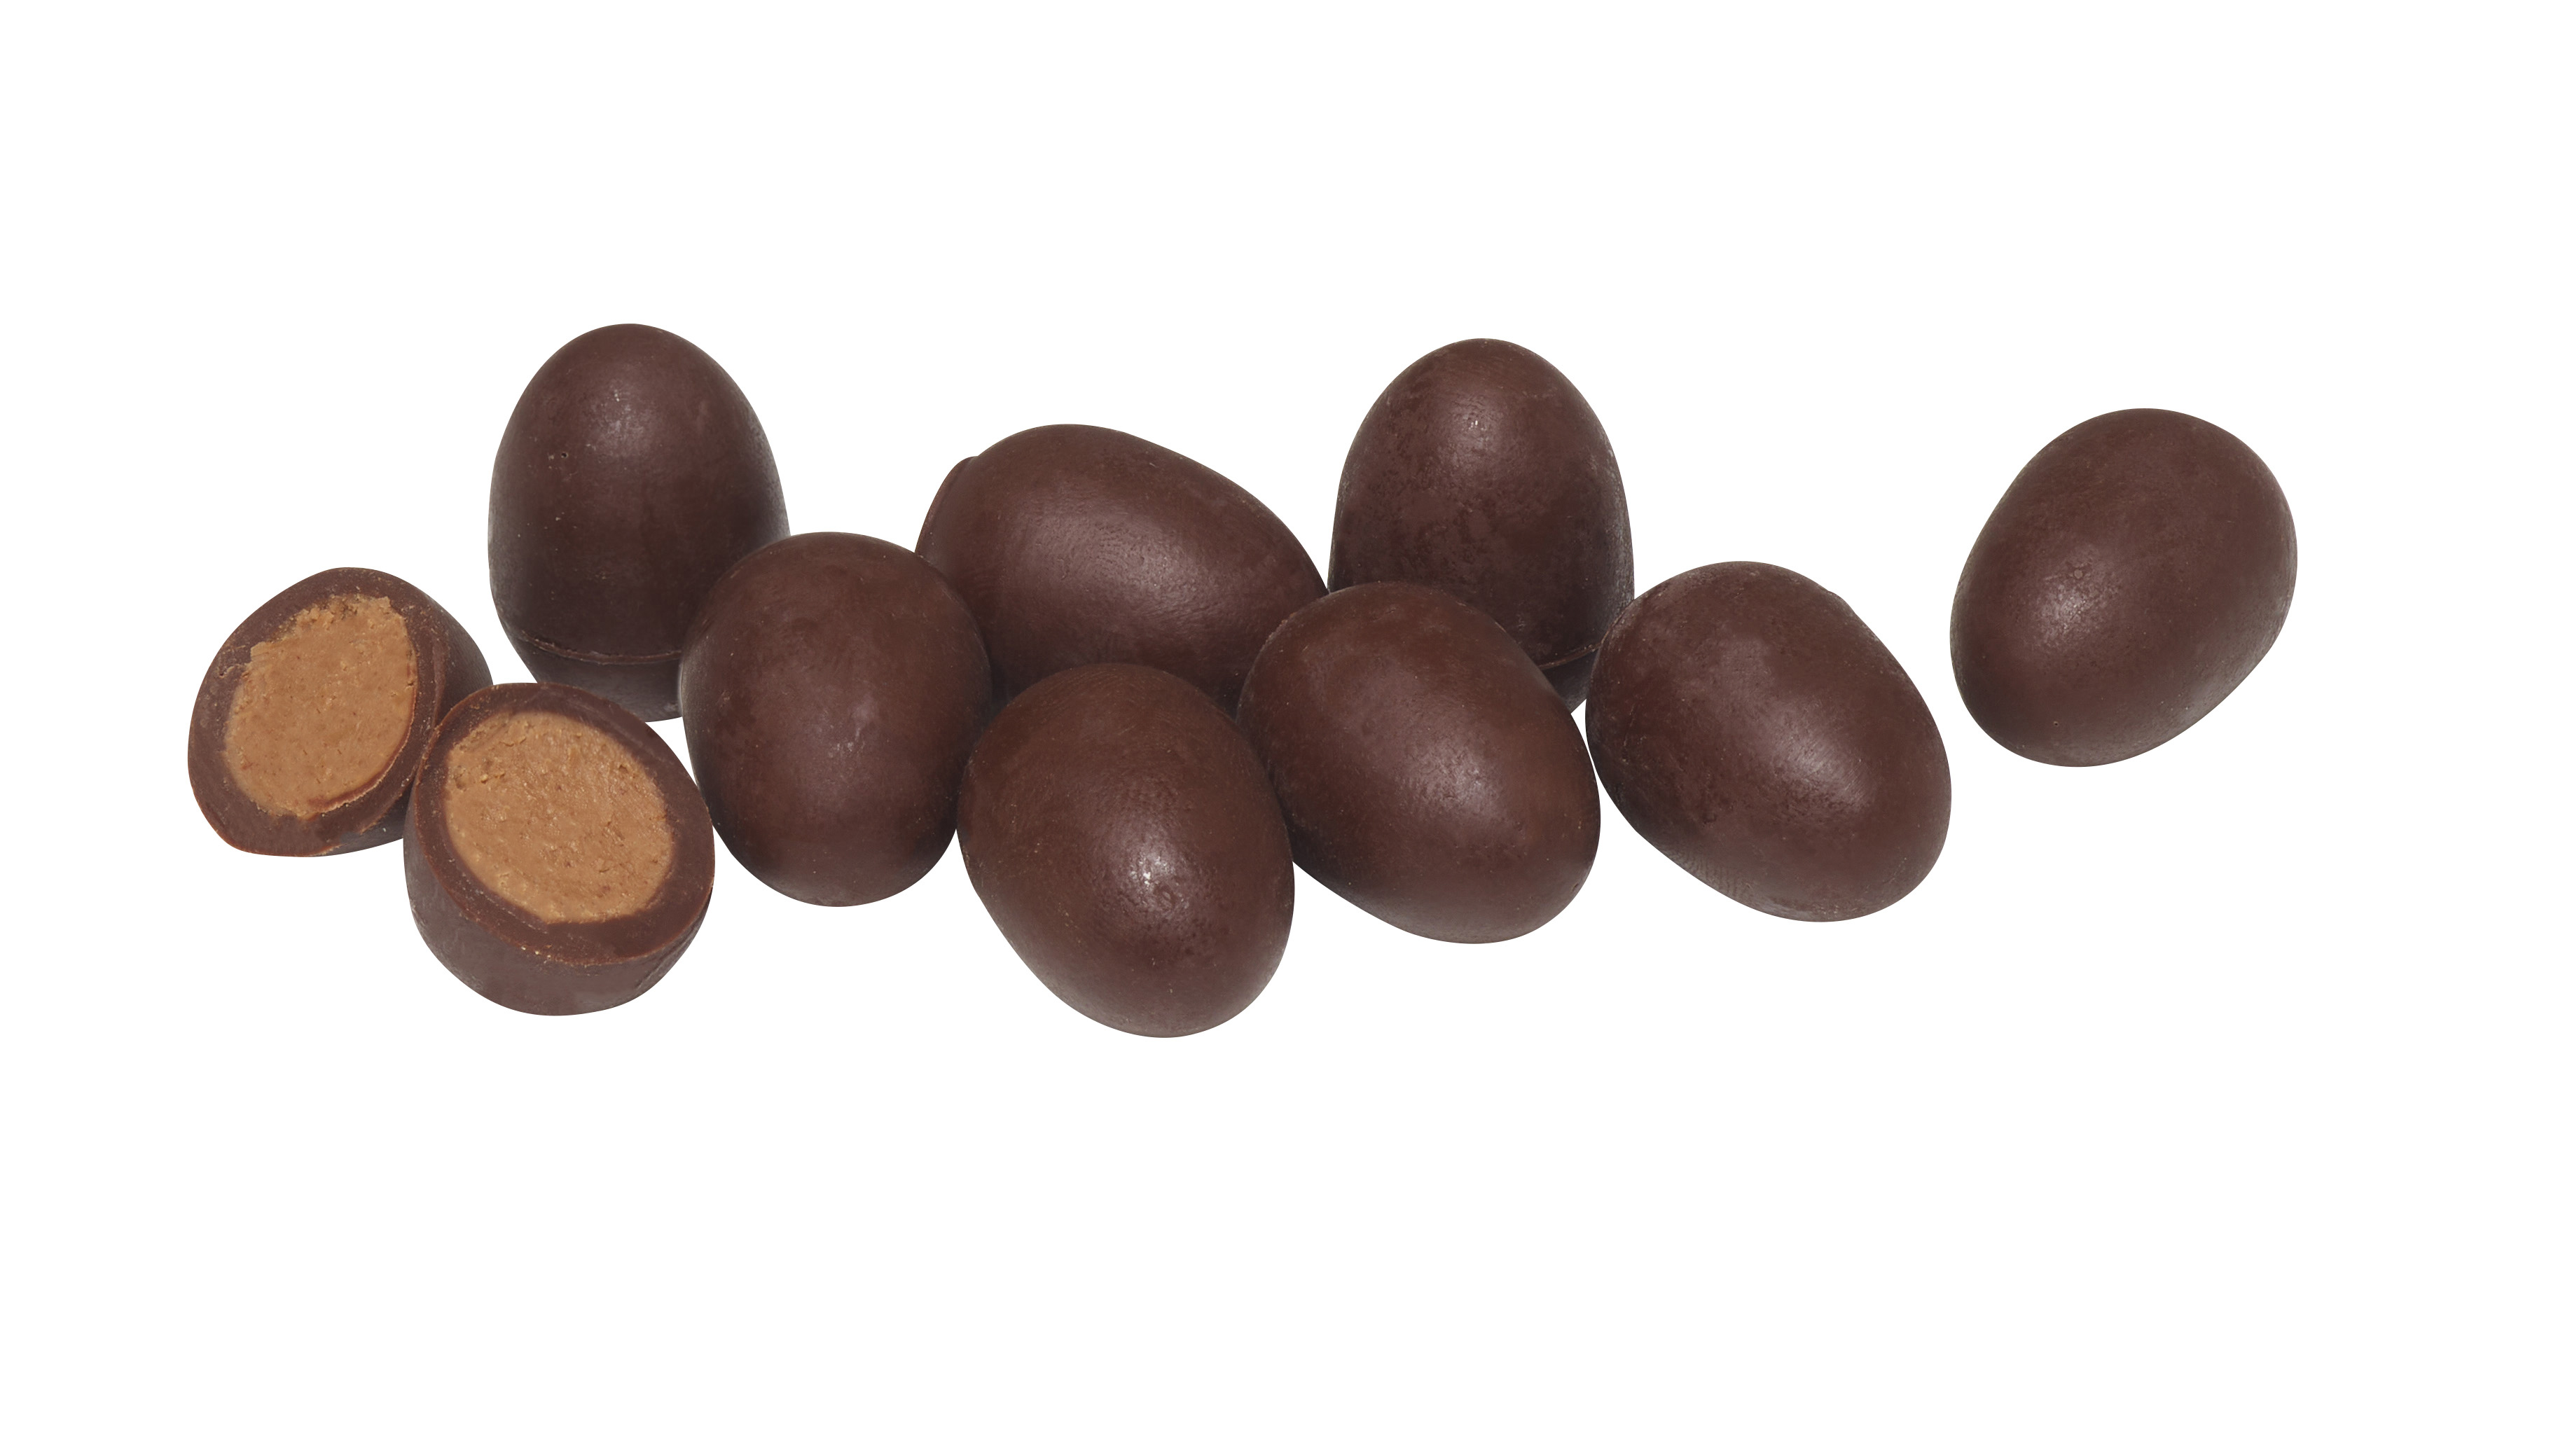 Belledonne Oeufs chocolat noir 57% coeur praliné amande-noisette vrac bio 2kg - 002311